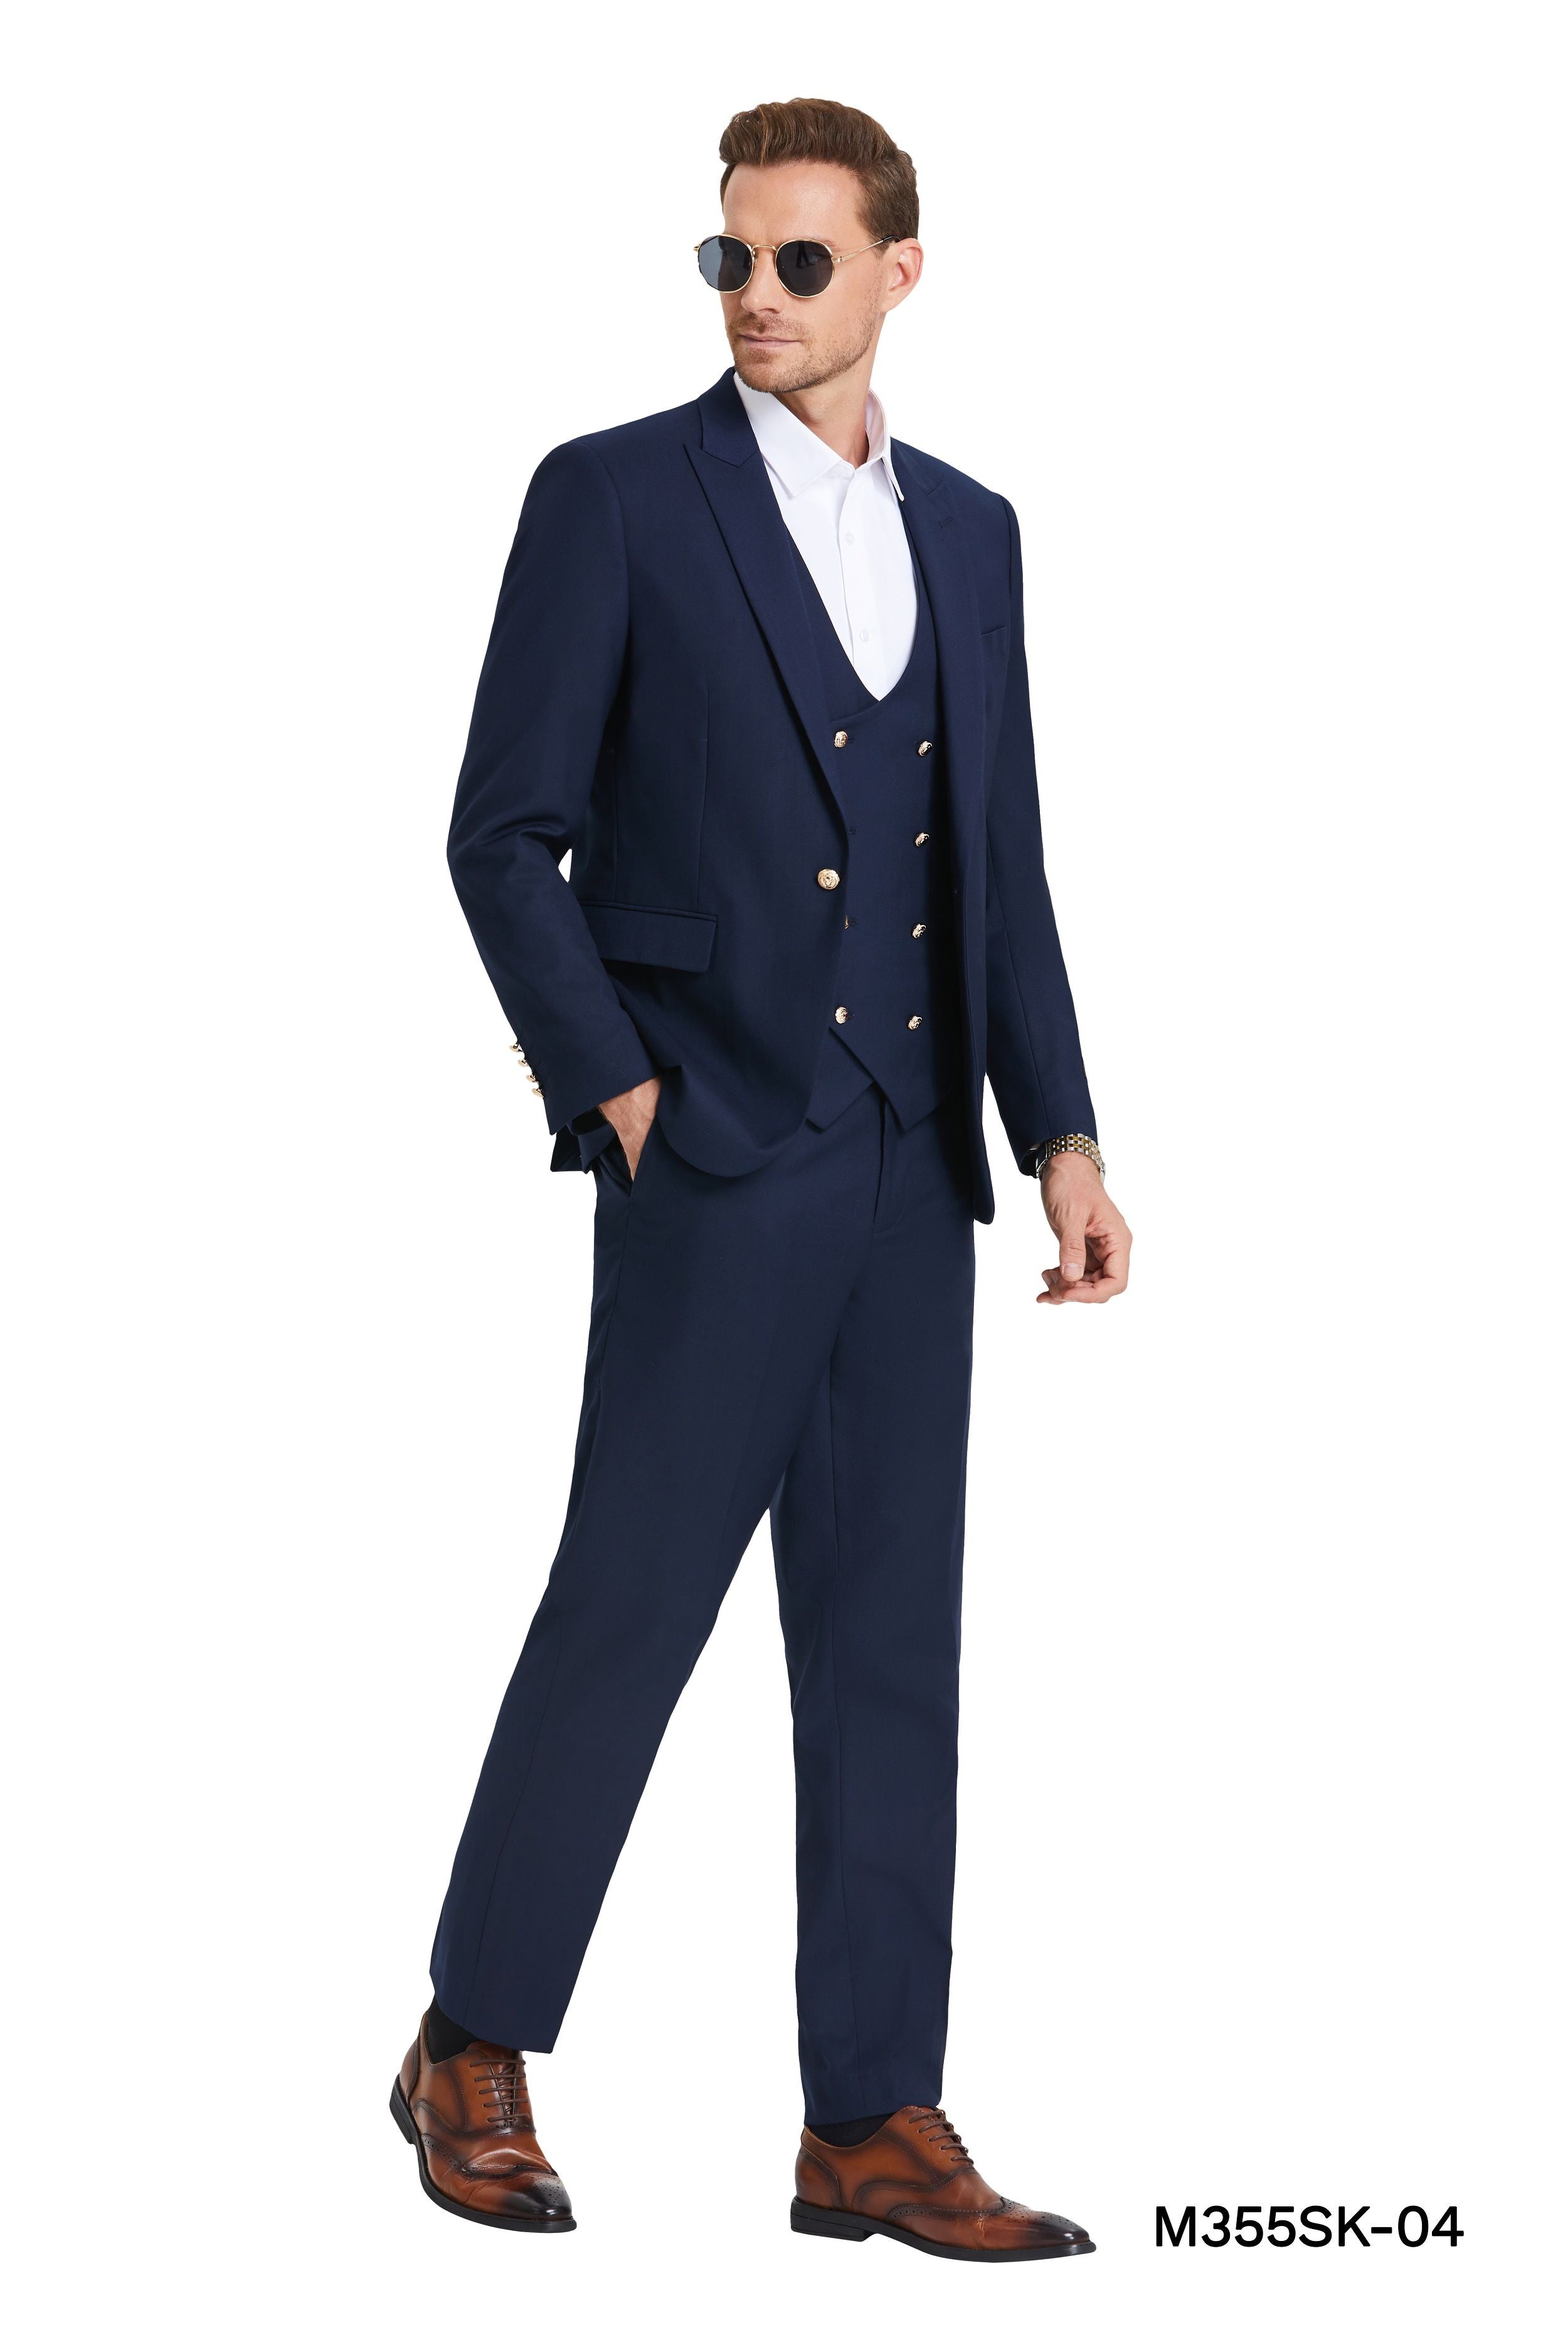 Tazio Men's Skinny Fit 3-Piece Suit - Bold Colors